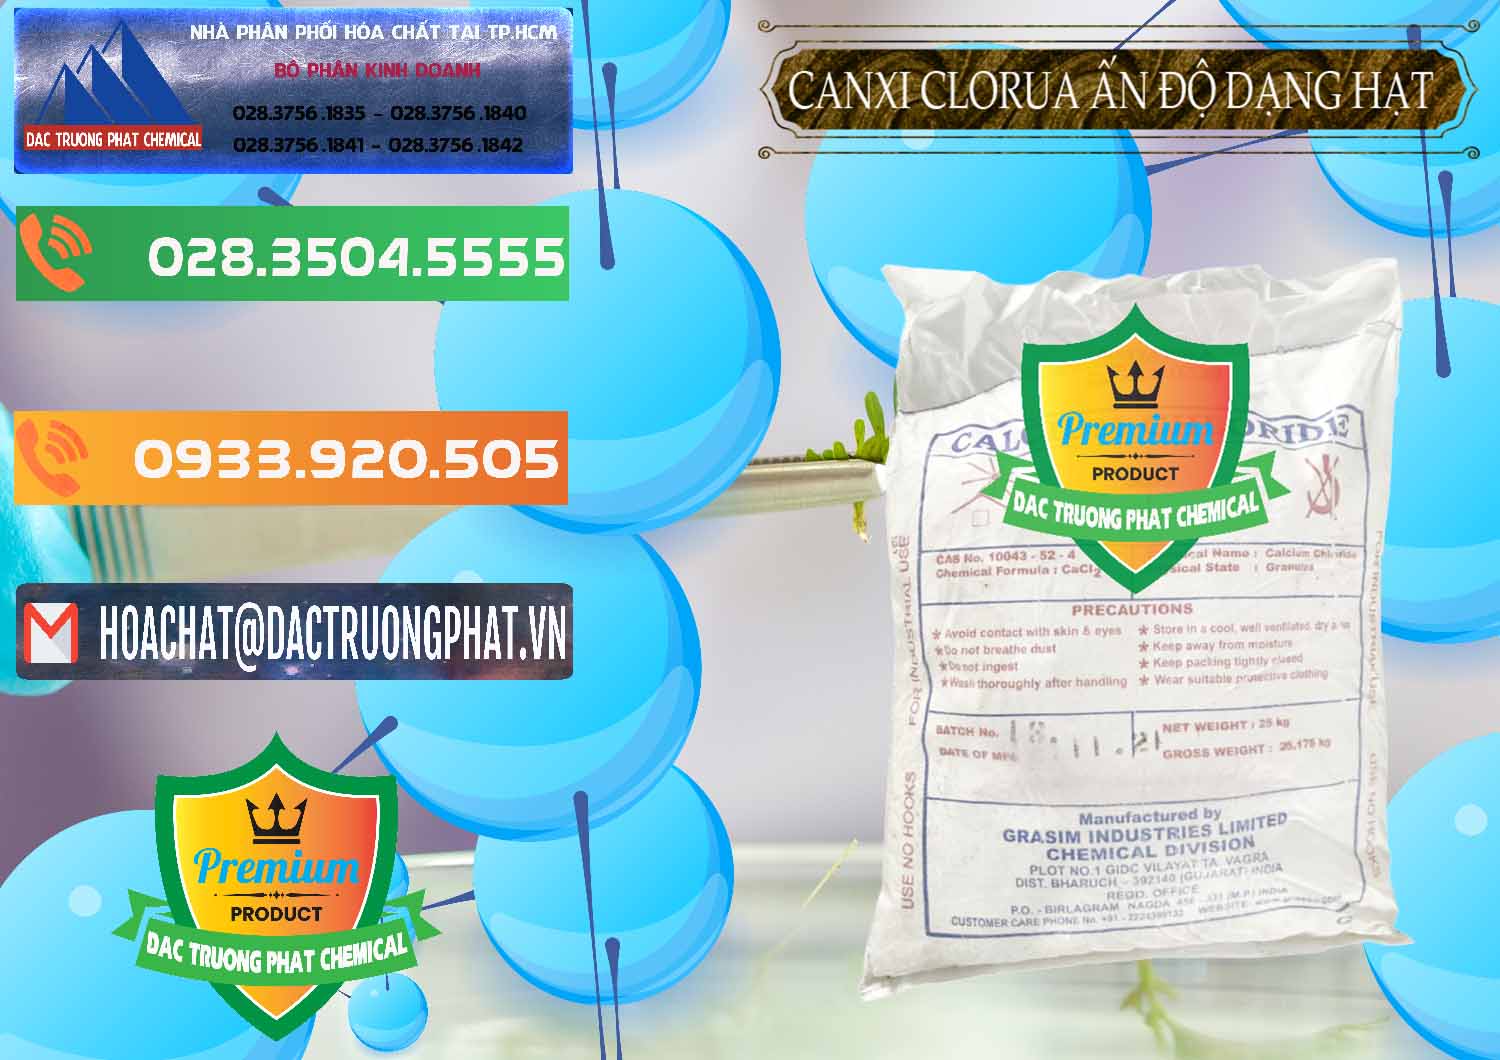 Đơn vị bán ( cung cấp ) CaCl2 – Canxi Clorua Dạng Hạt Aditya Birla Grasim Ấn Độ India - 0418 - Đơn vị bán và cung cấp hóa chất tại TP.HCM - hoachatxulynuoc.com.vn